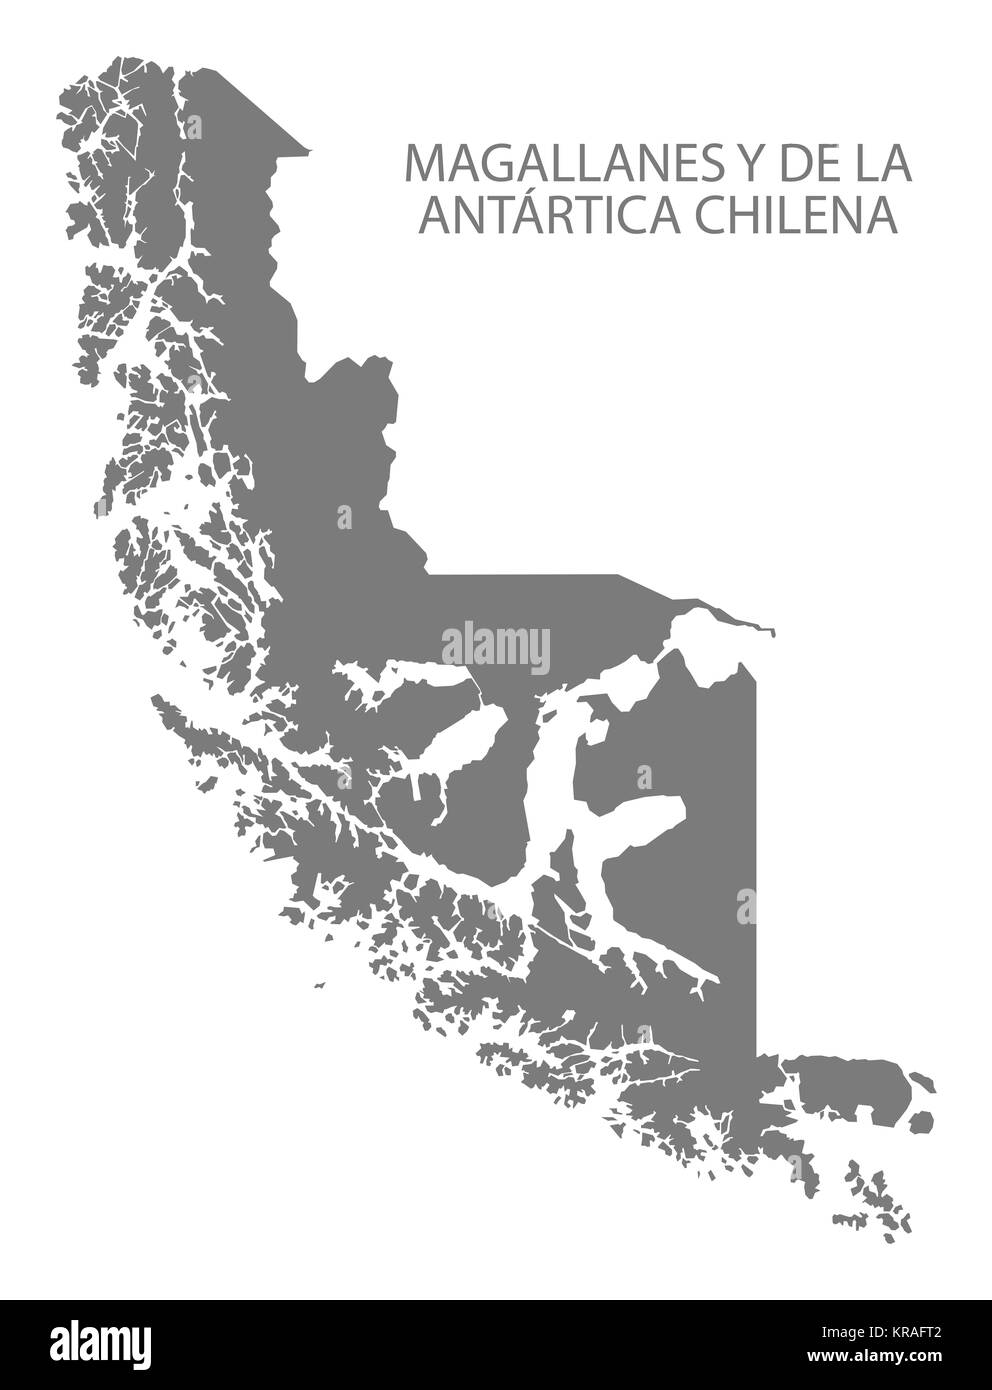 Magallanes y de la Antartica Chilena Chile Map in grey Stock Photo